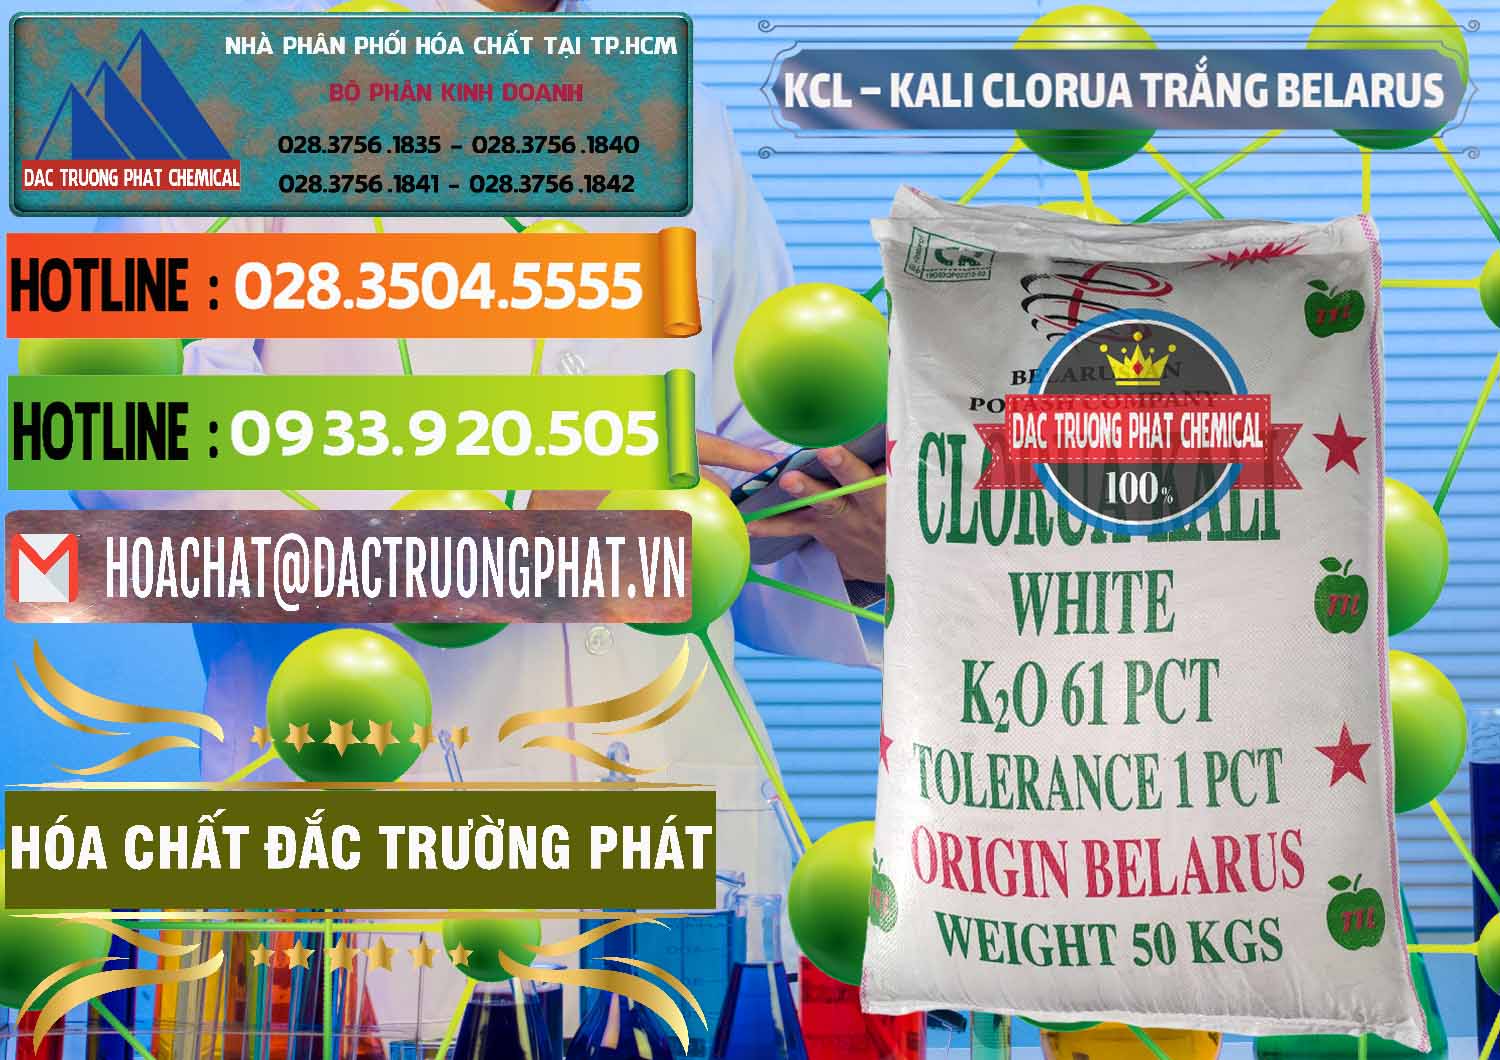 Cty chuyên cung cấp và bán KCL – Kali Clorua Trắng Belarus - 0085 - Công ty chuyên cung ứng - phân phối hóa chất tại TP.HCM - cungcaphoachat.com.vn